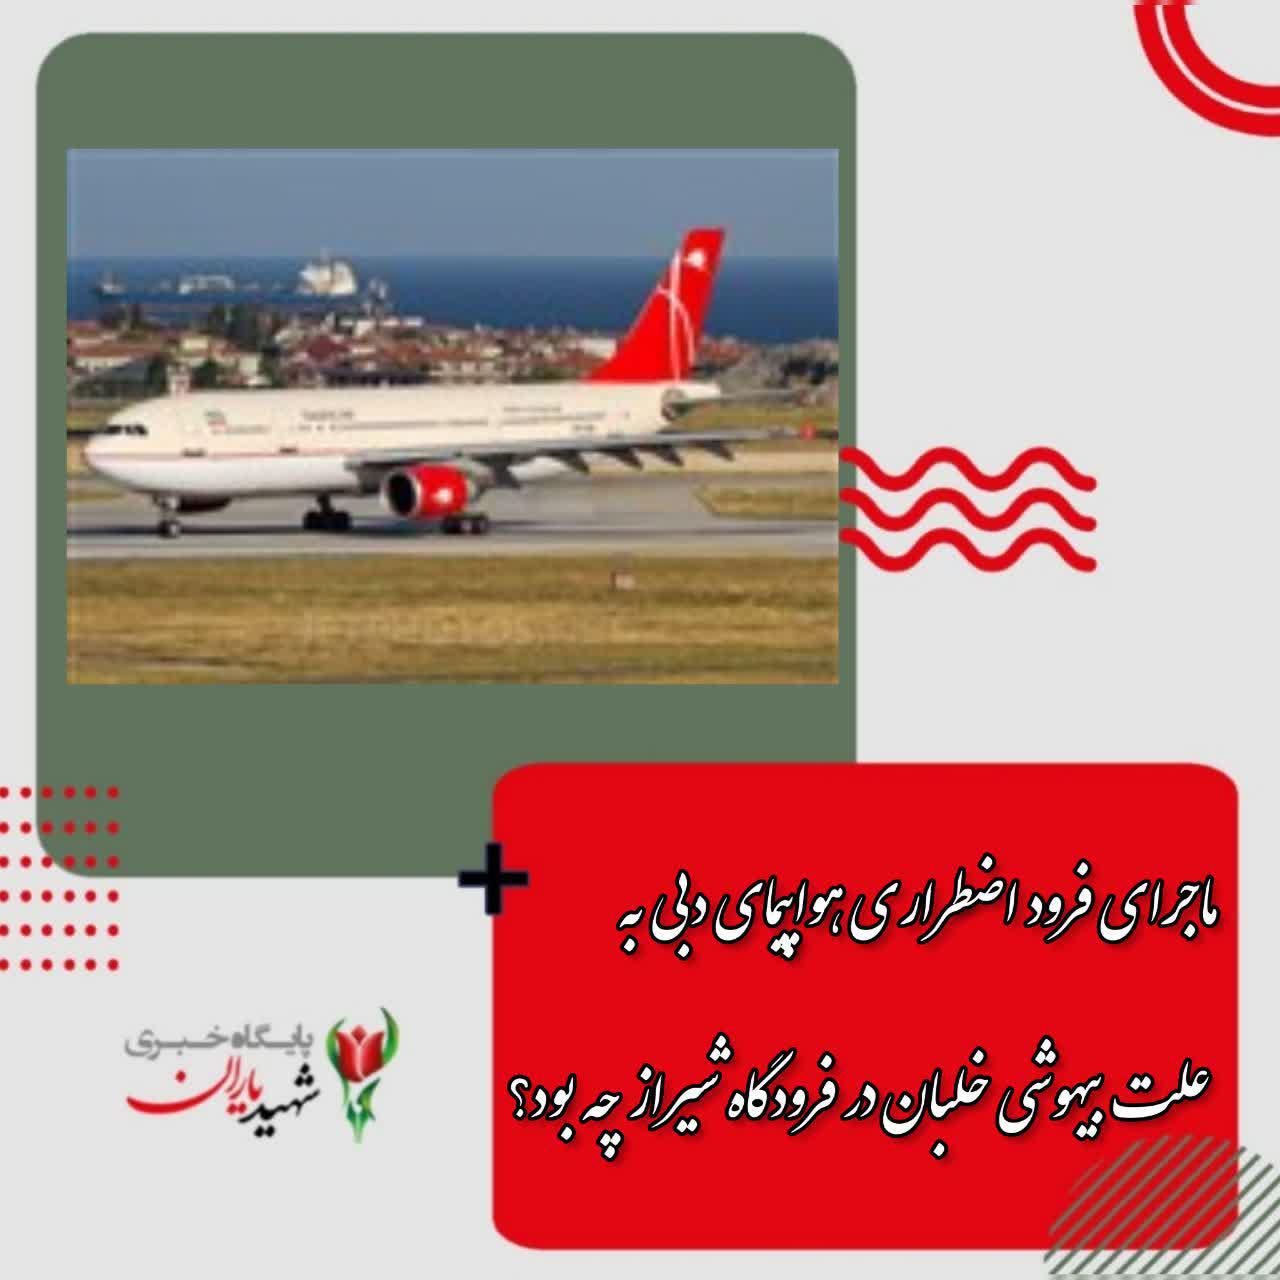 ماجرای فرود اضطراری هواپیمای دبی به علت بیهوشی خلبان در فرودگاه شیراز چه بود؟